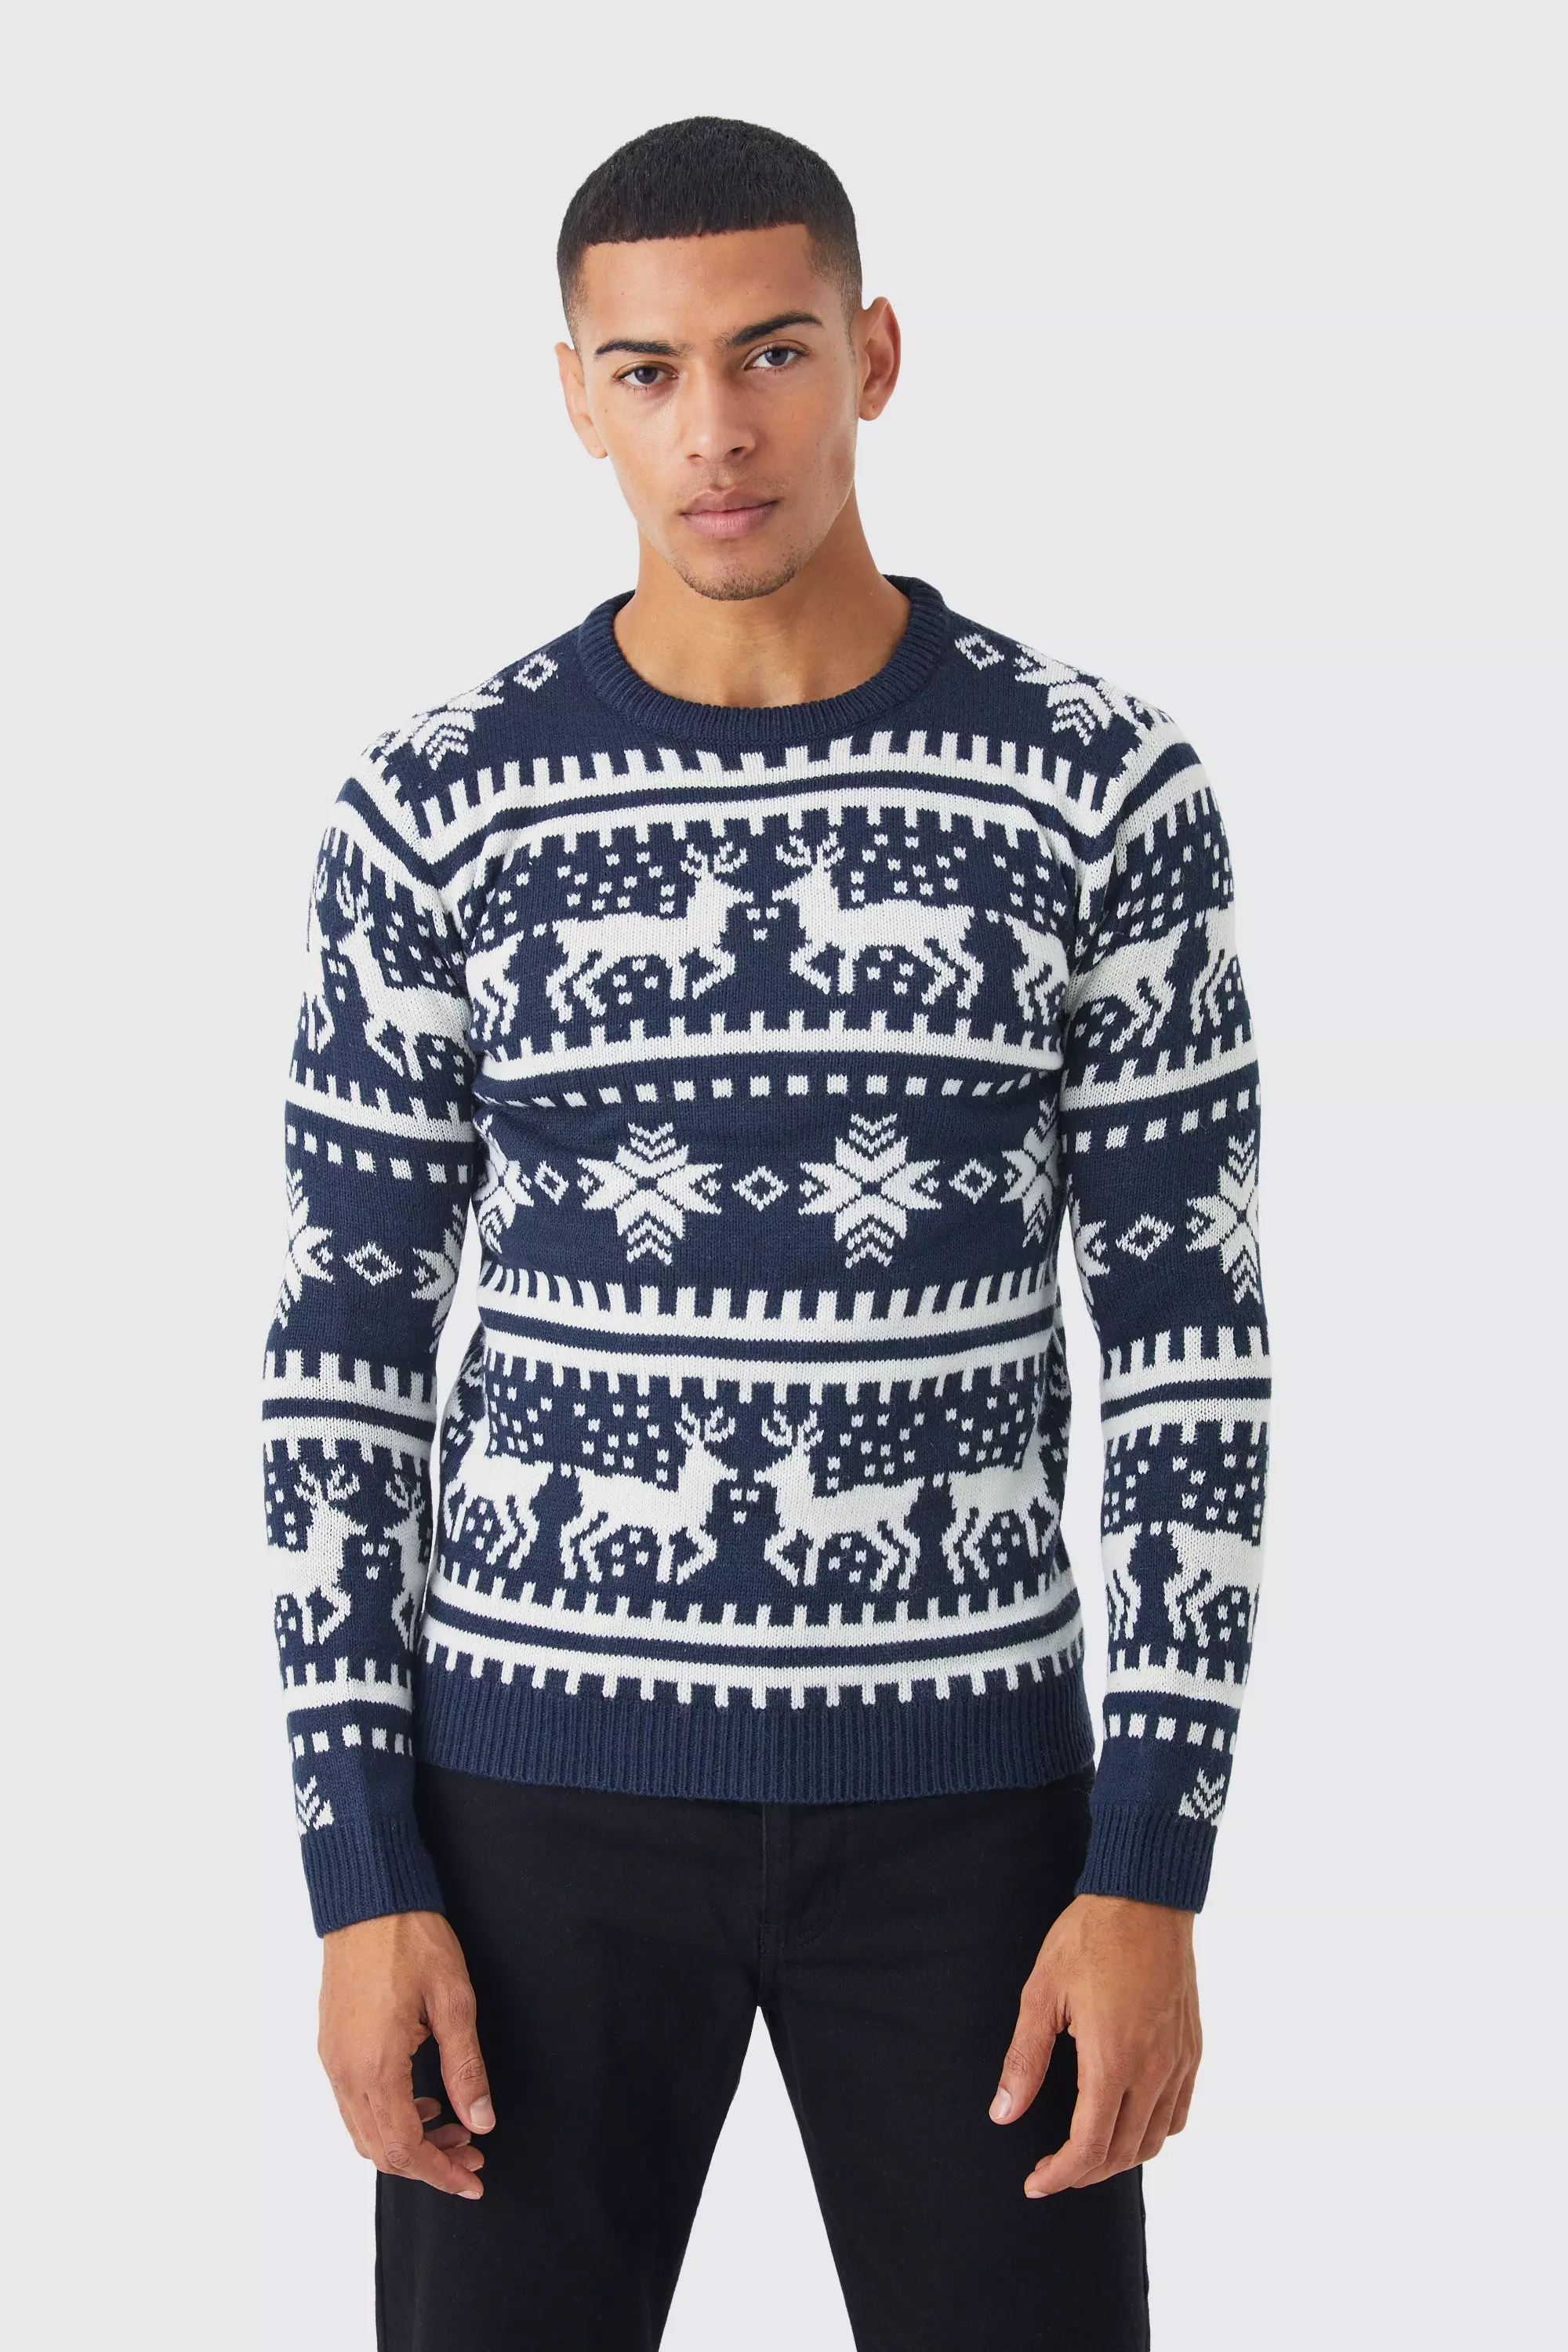 Reindeer Fair Isle Christmas Sweater Navy